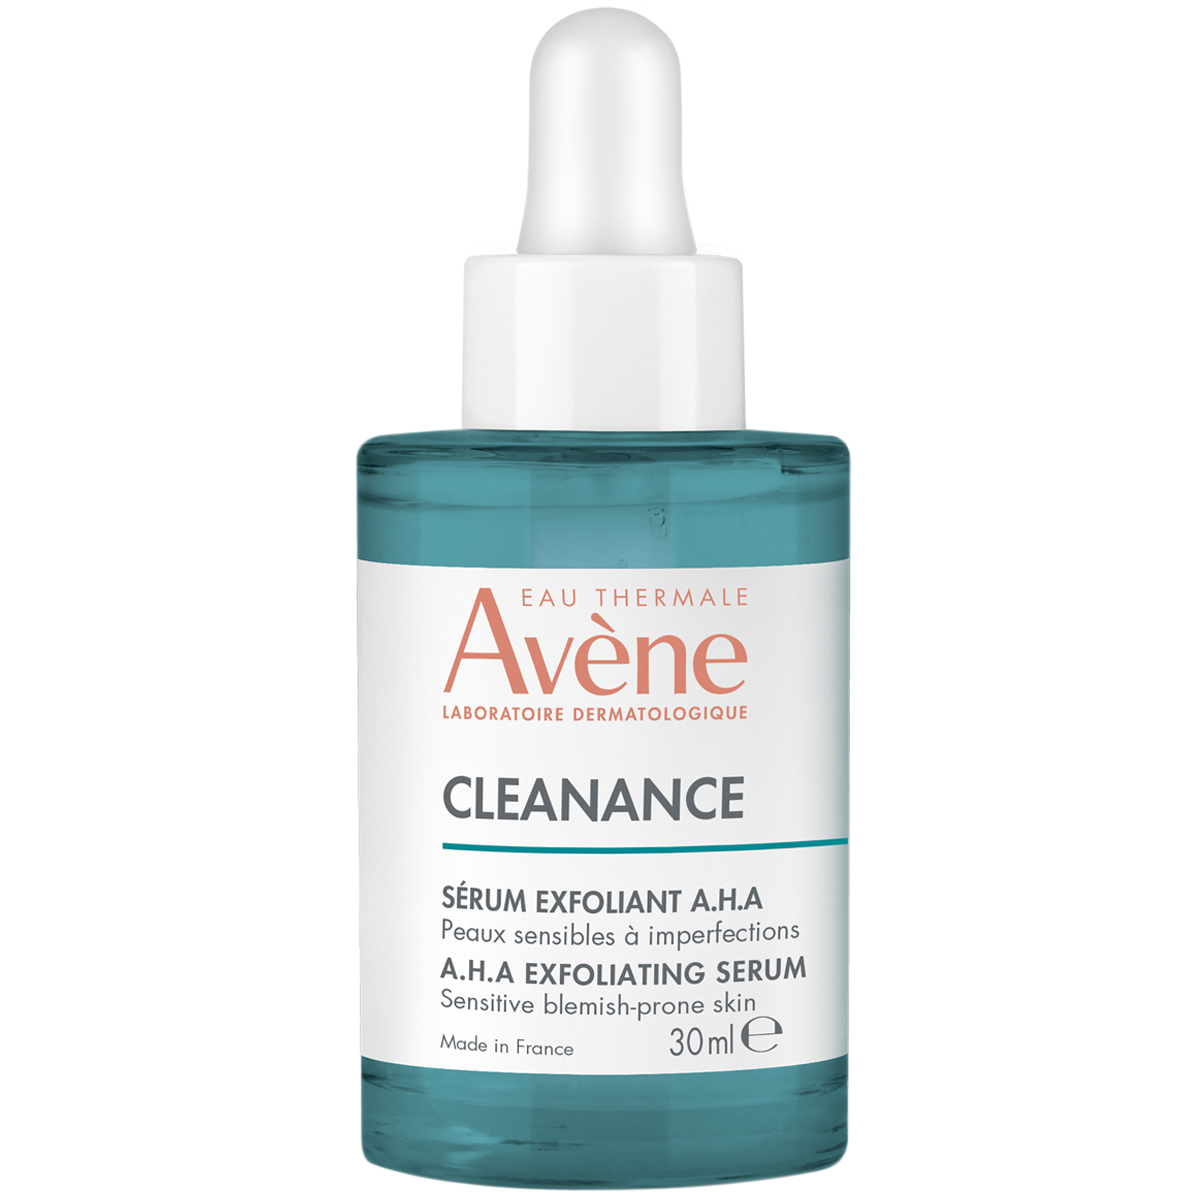 Avene Обновляющая сыворотка для жирной и комбинированной кожи, 30 мл (Avene, Cleanance)